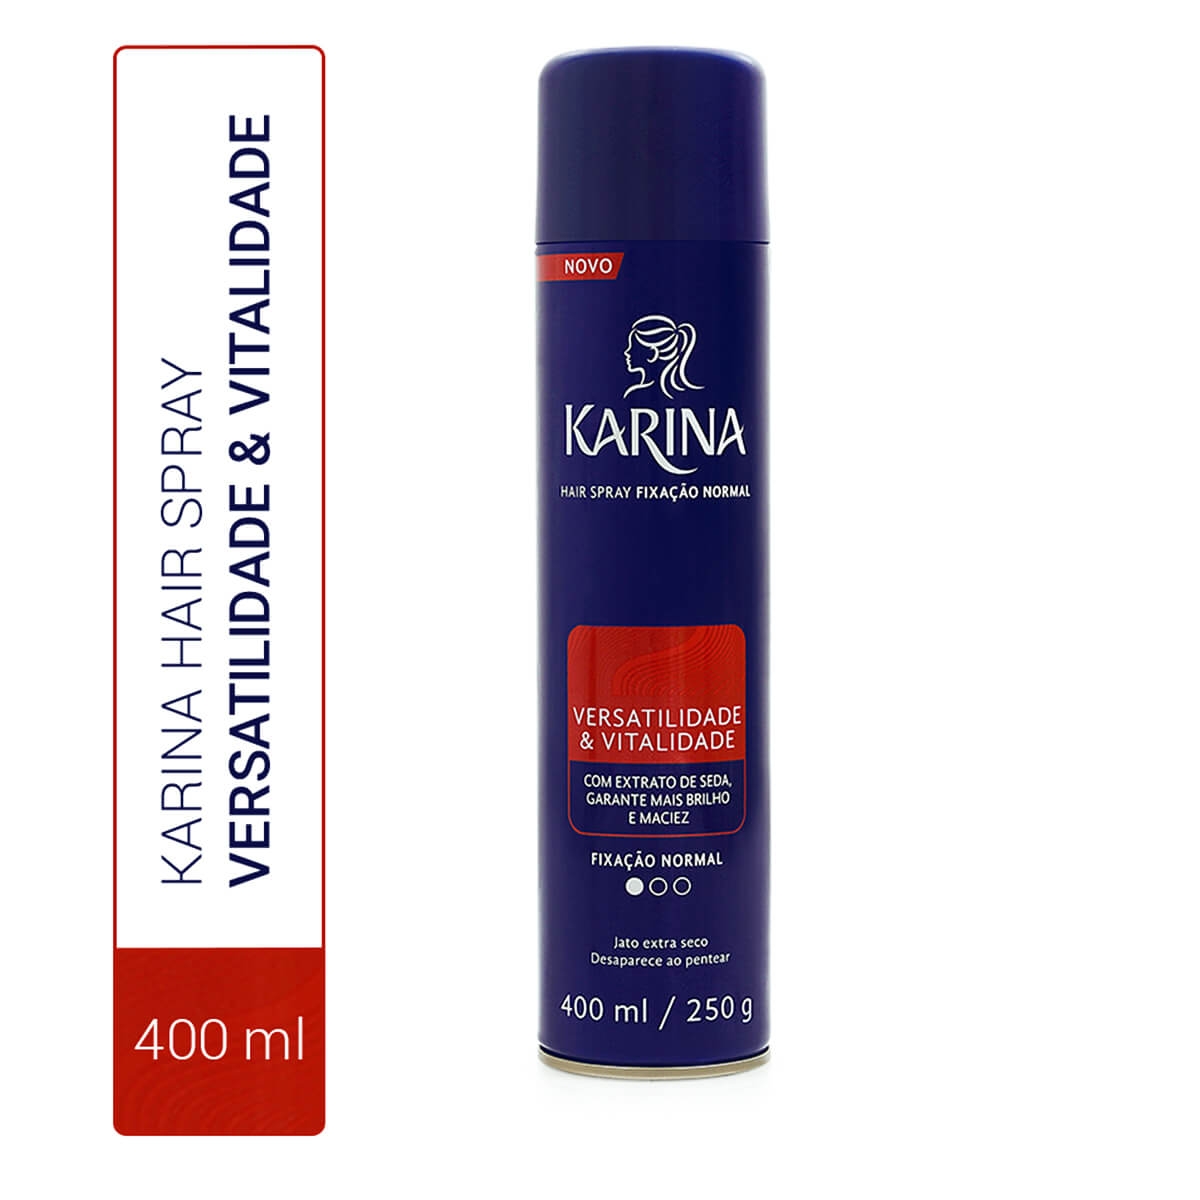 Hair Spray Karina Versatilidade & Vitalidade Fixação Normal com 400ml